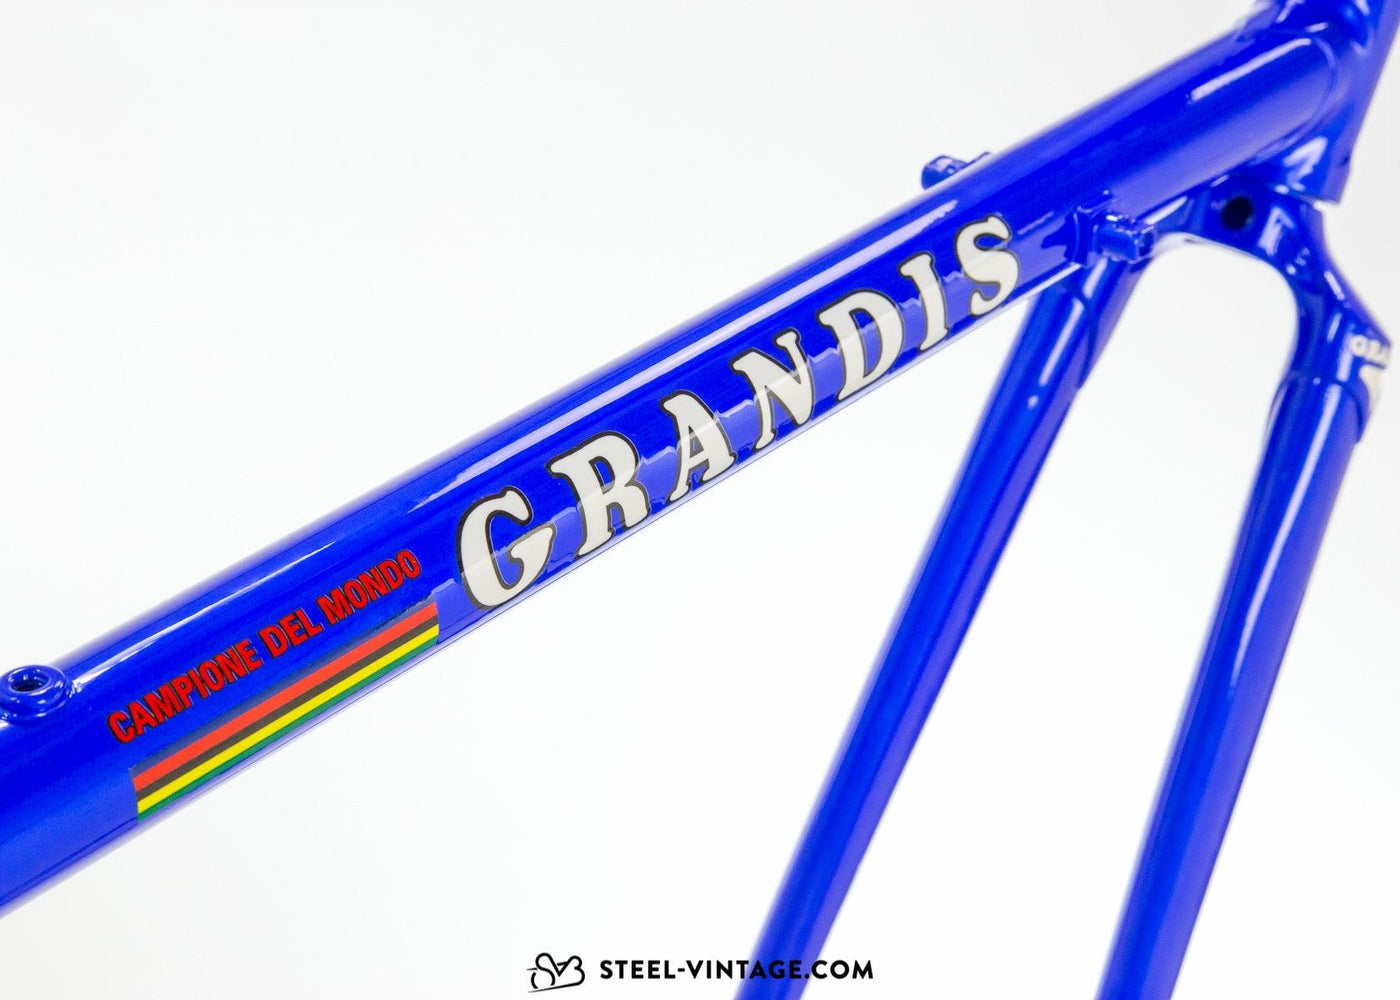 Grandis SL Classic Steel Road Bike 1980s - Steel Vintage Bikes